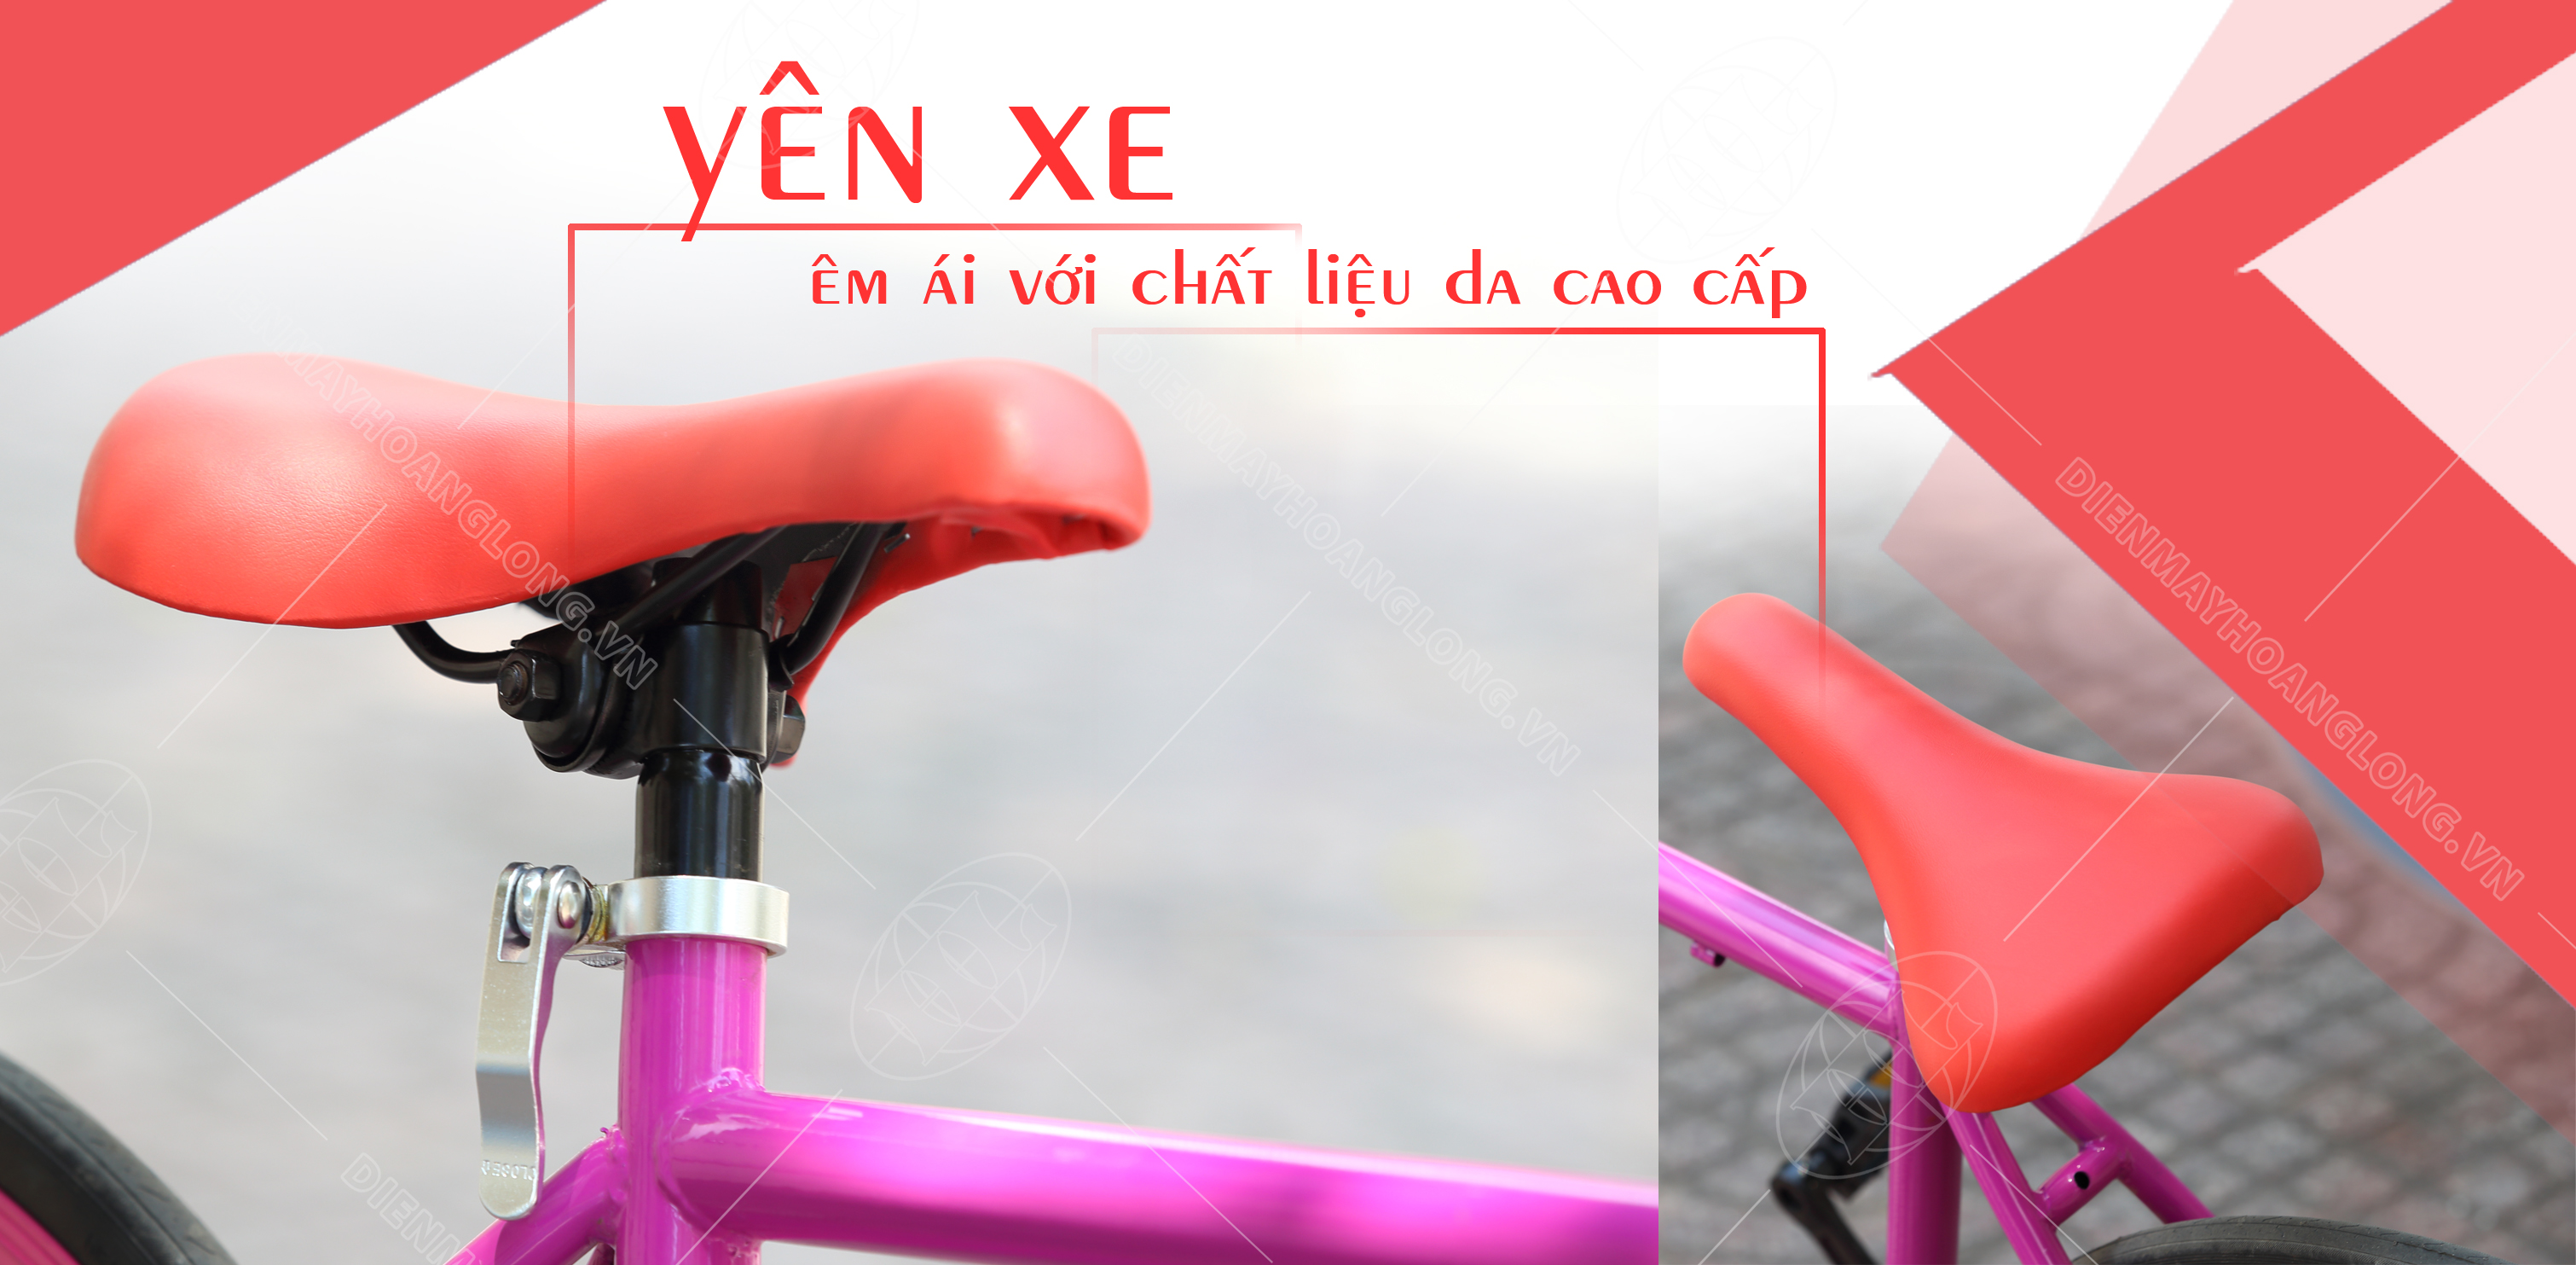 Xe đạp thời trang Ben Xanh ( Đỏ) - yên xe êm ái